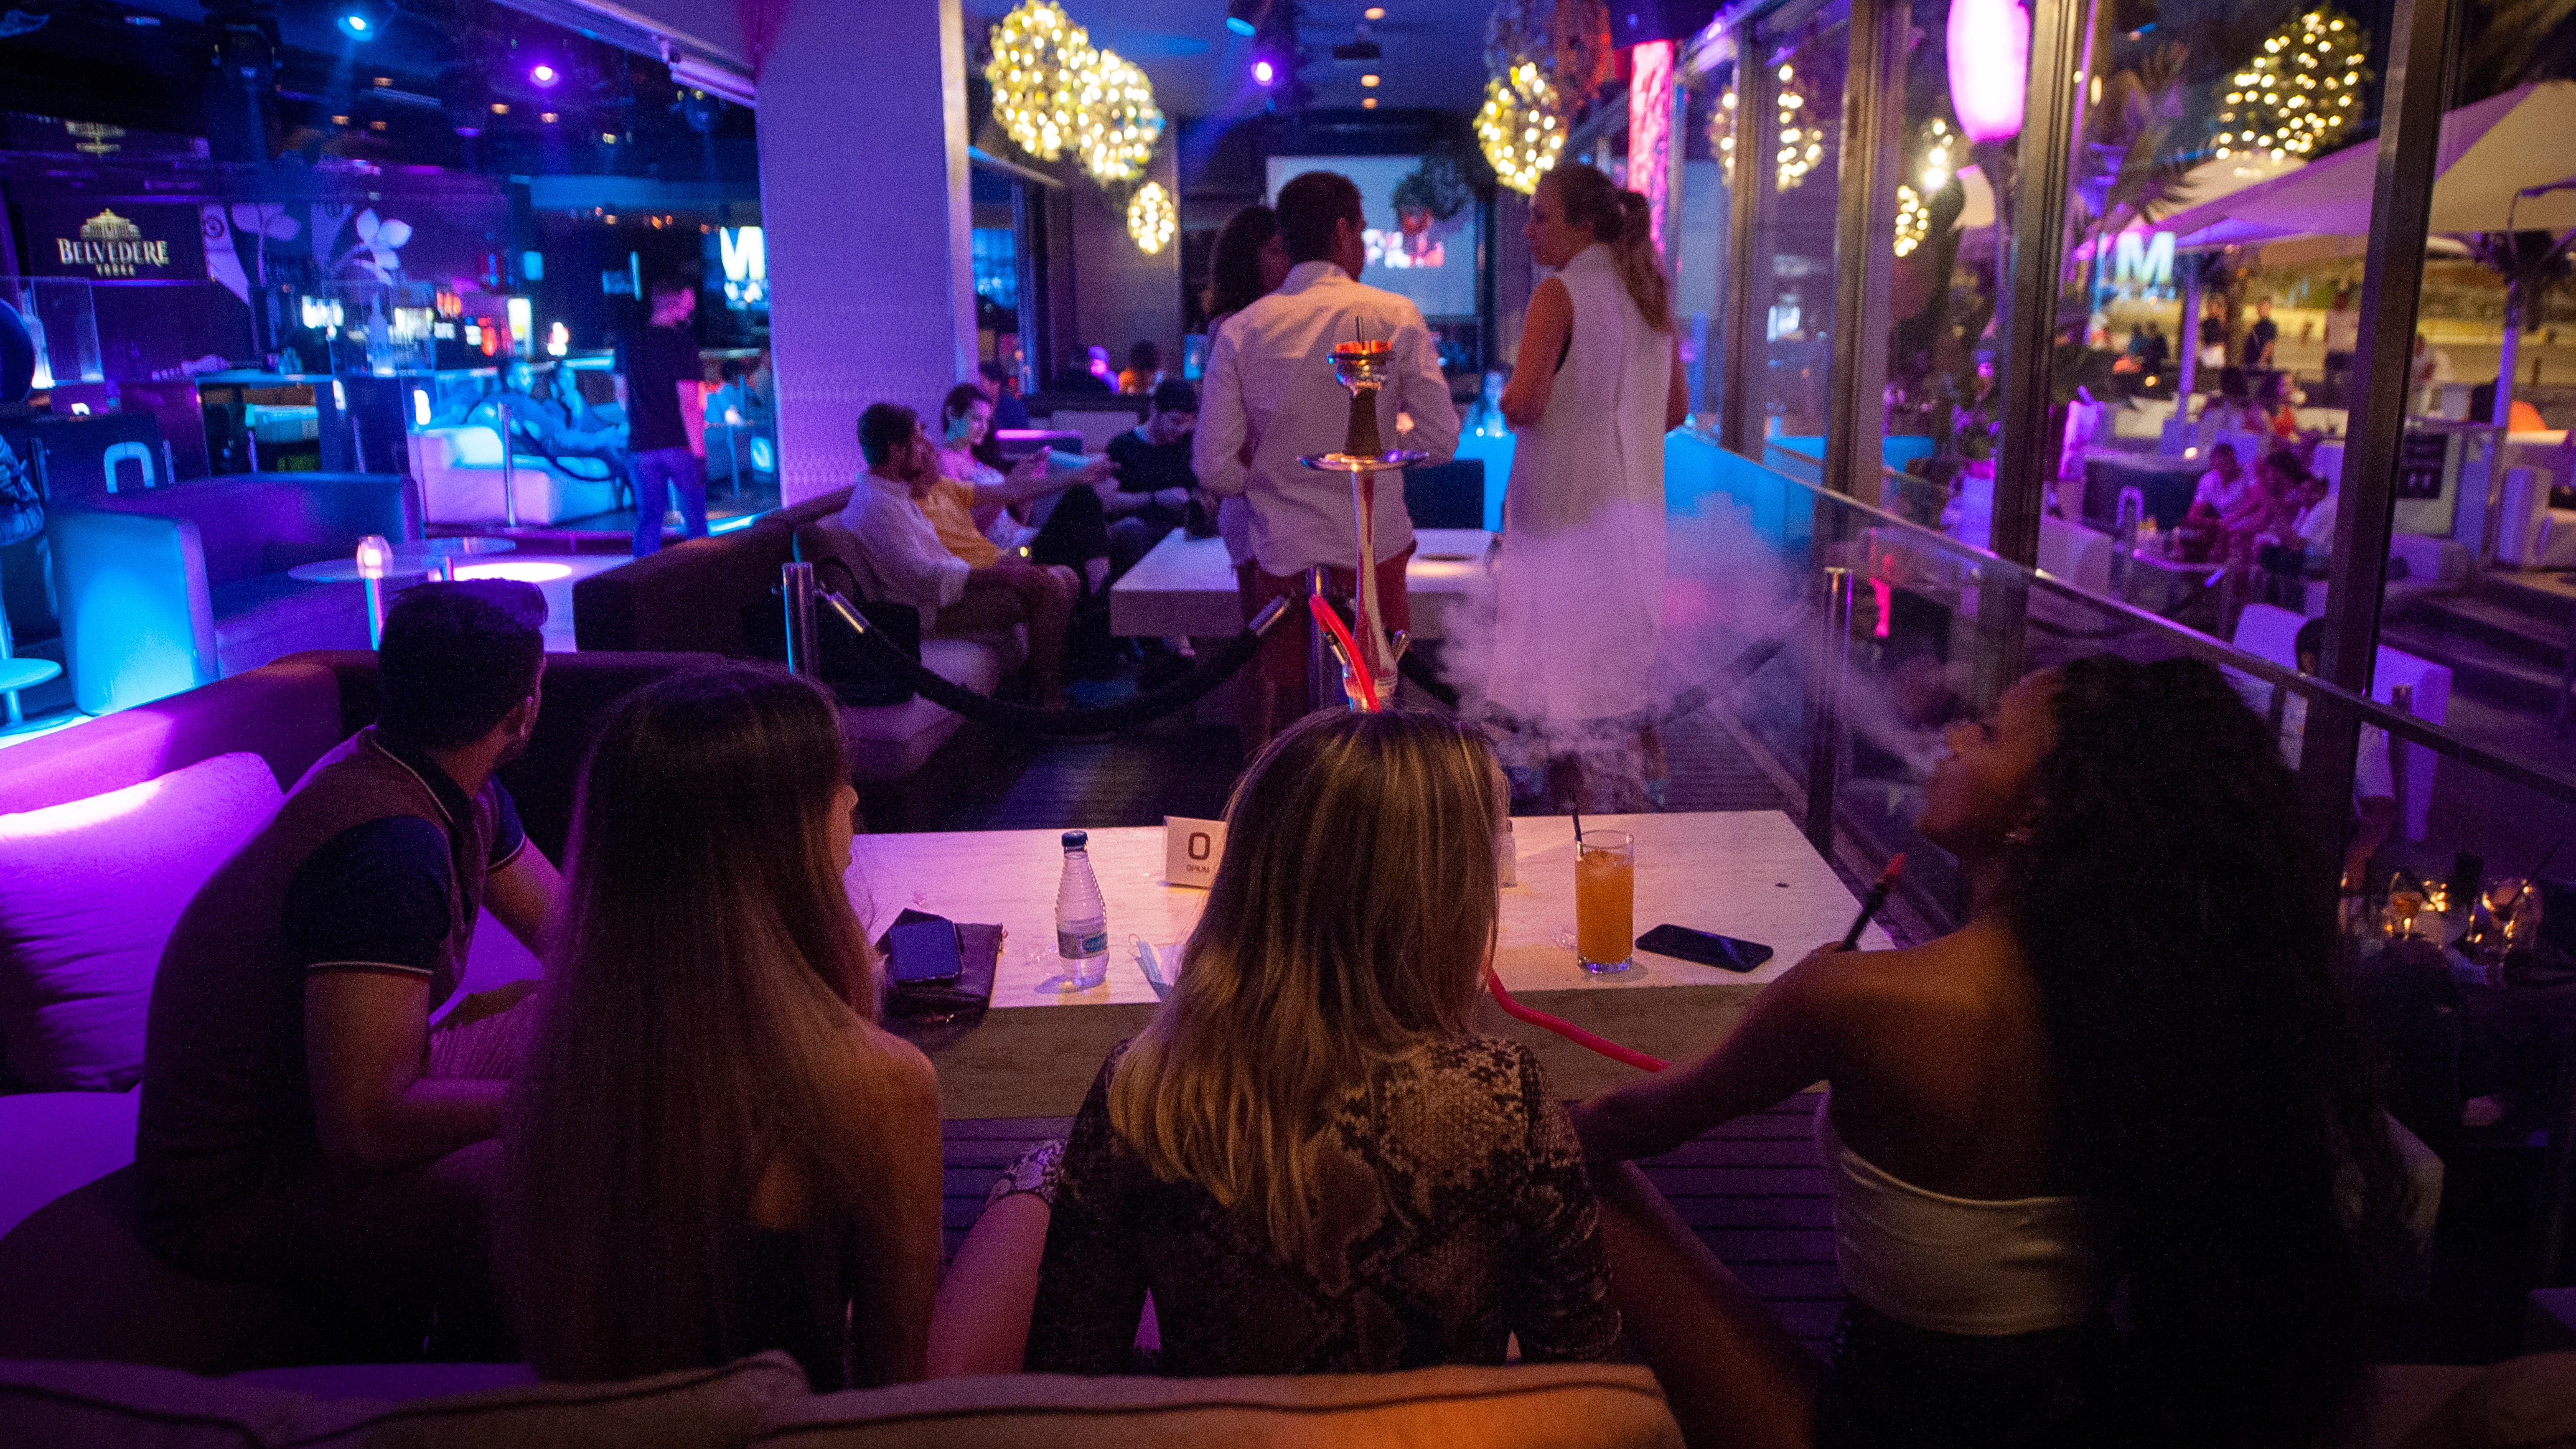 El negocio de las chicas imagen en las discotecas: "La misión es sonreír y hacer los hombres beban más" | Cataluña - Notas de Prensa